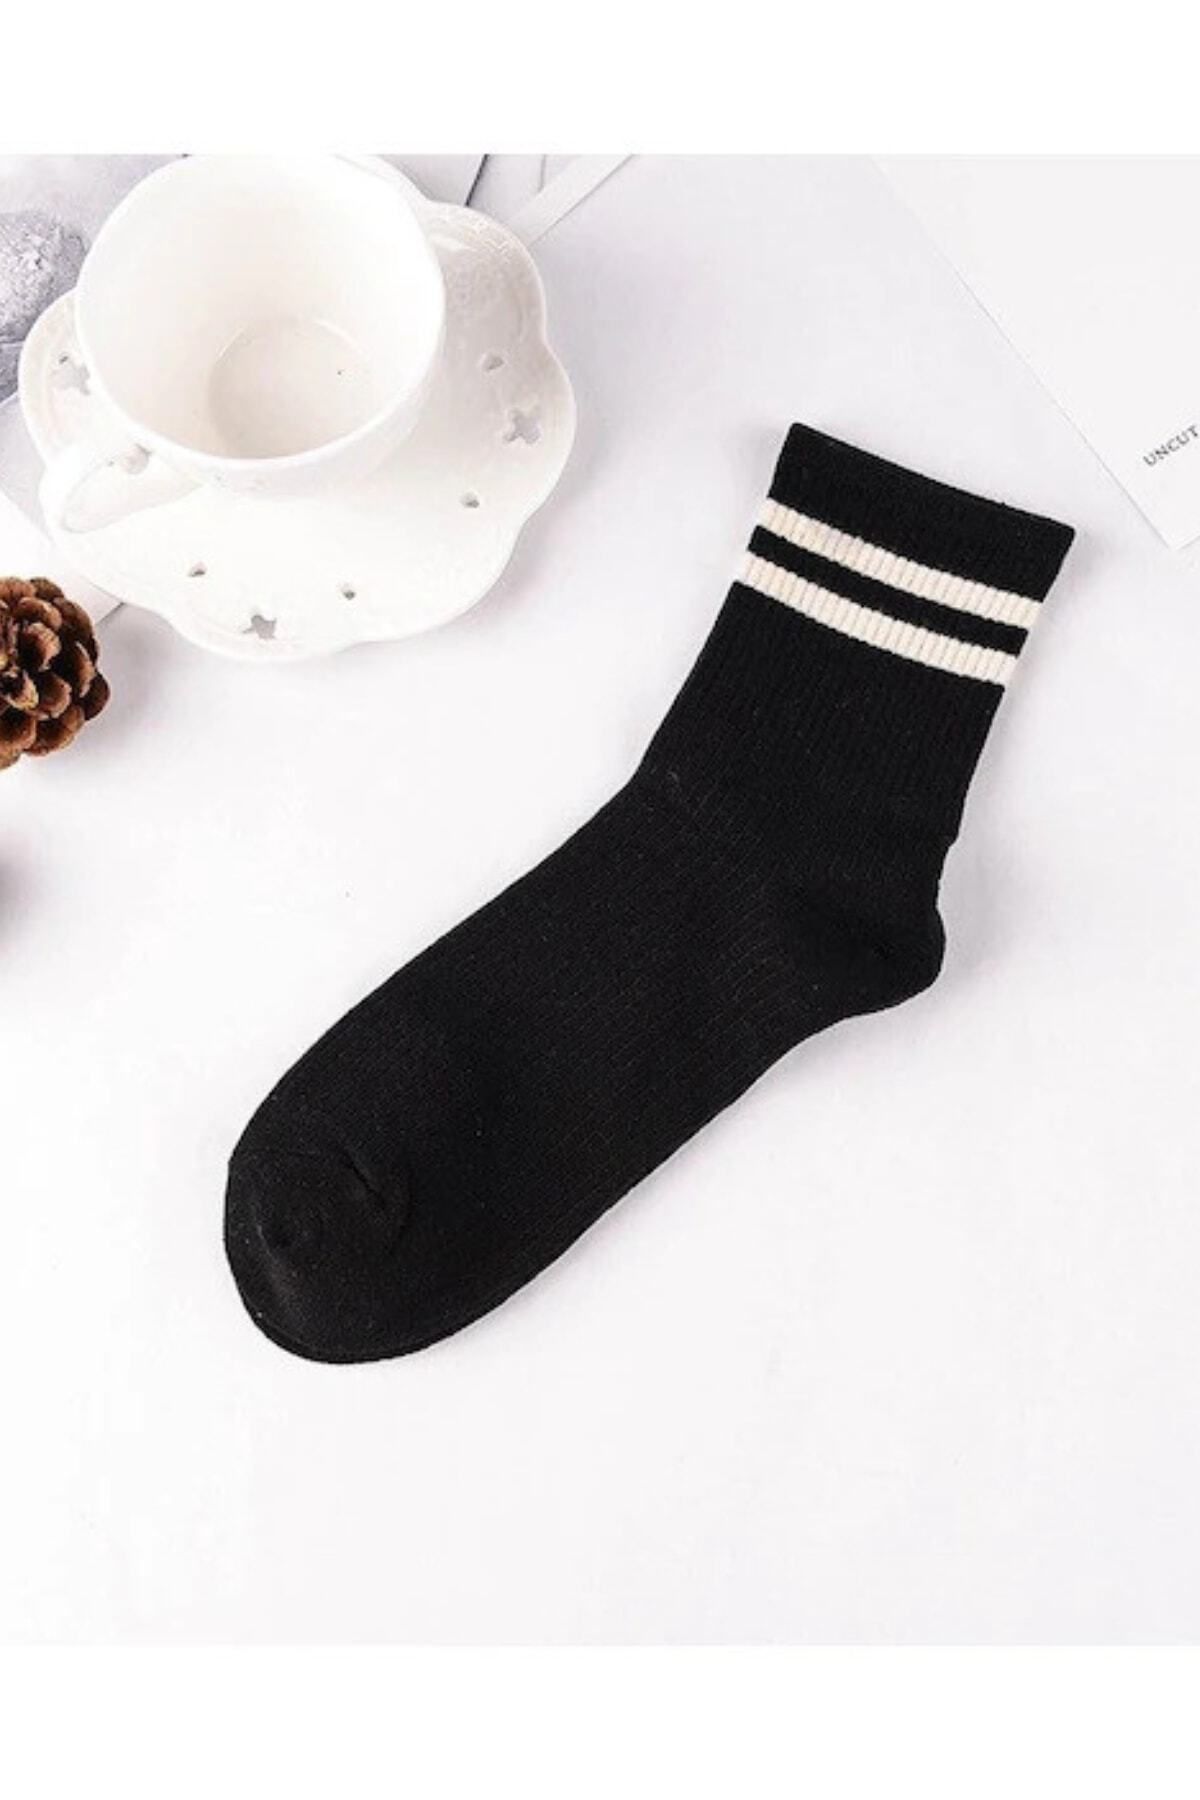 CFNY SOCKS 4 Çift Ekonomik Paket Erkek Kadın Unisex Çorap Soket Uzun Tenis Corap Çizgili Kolej Çoraplar